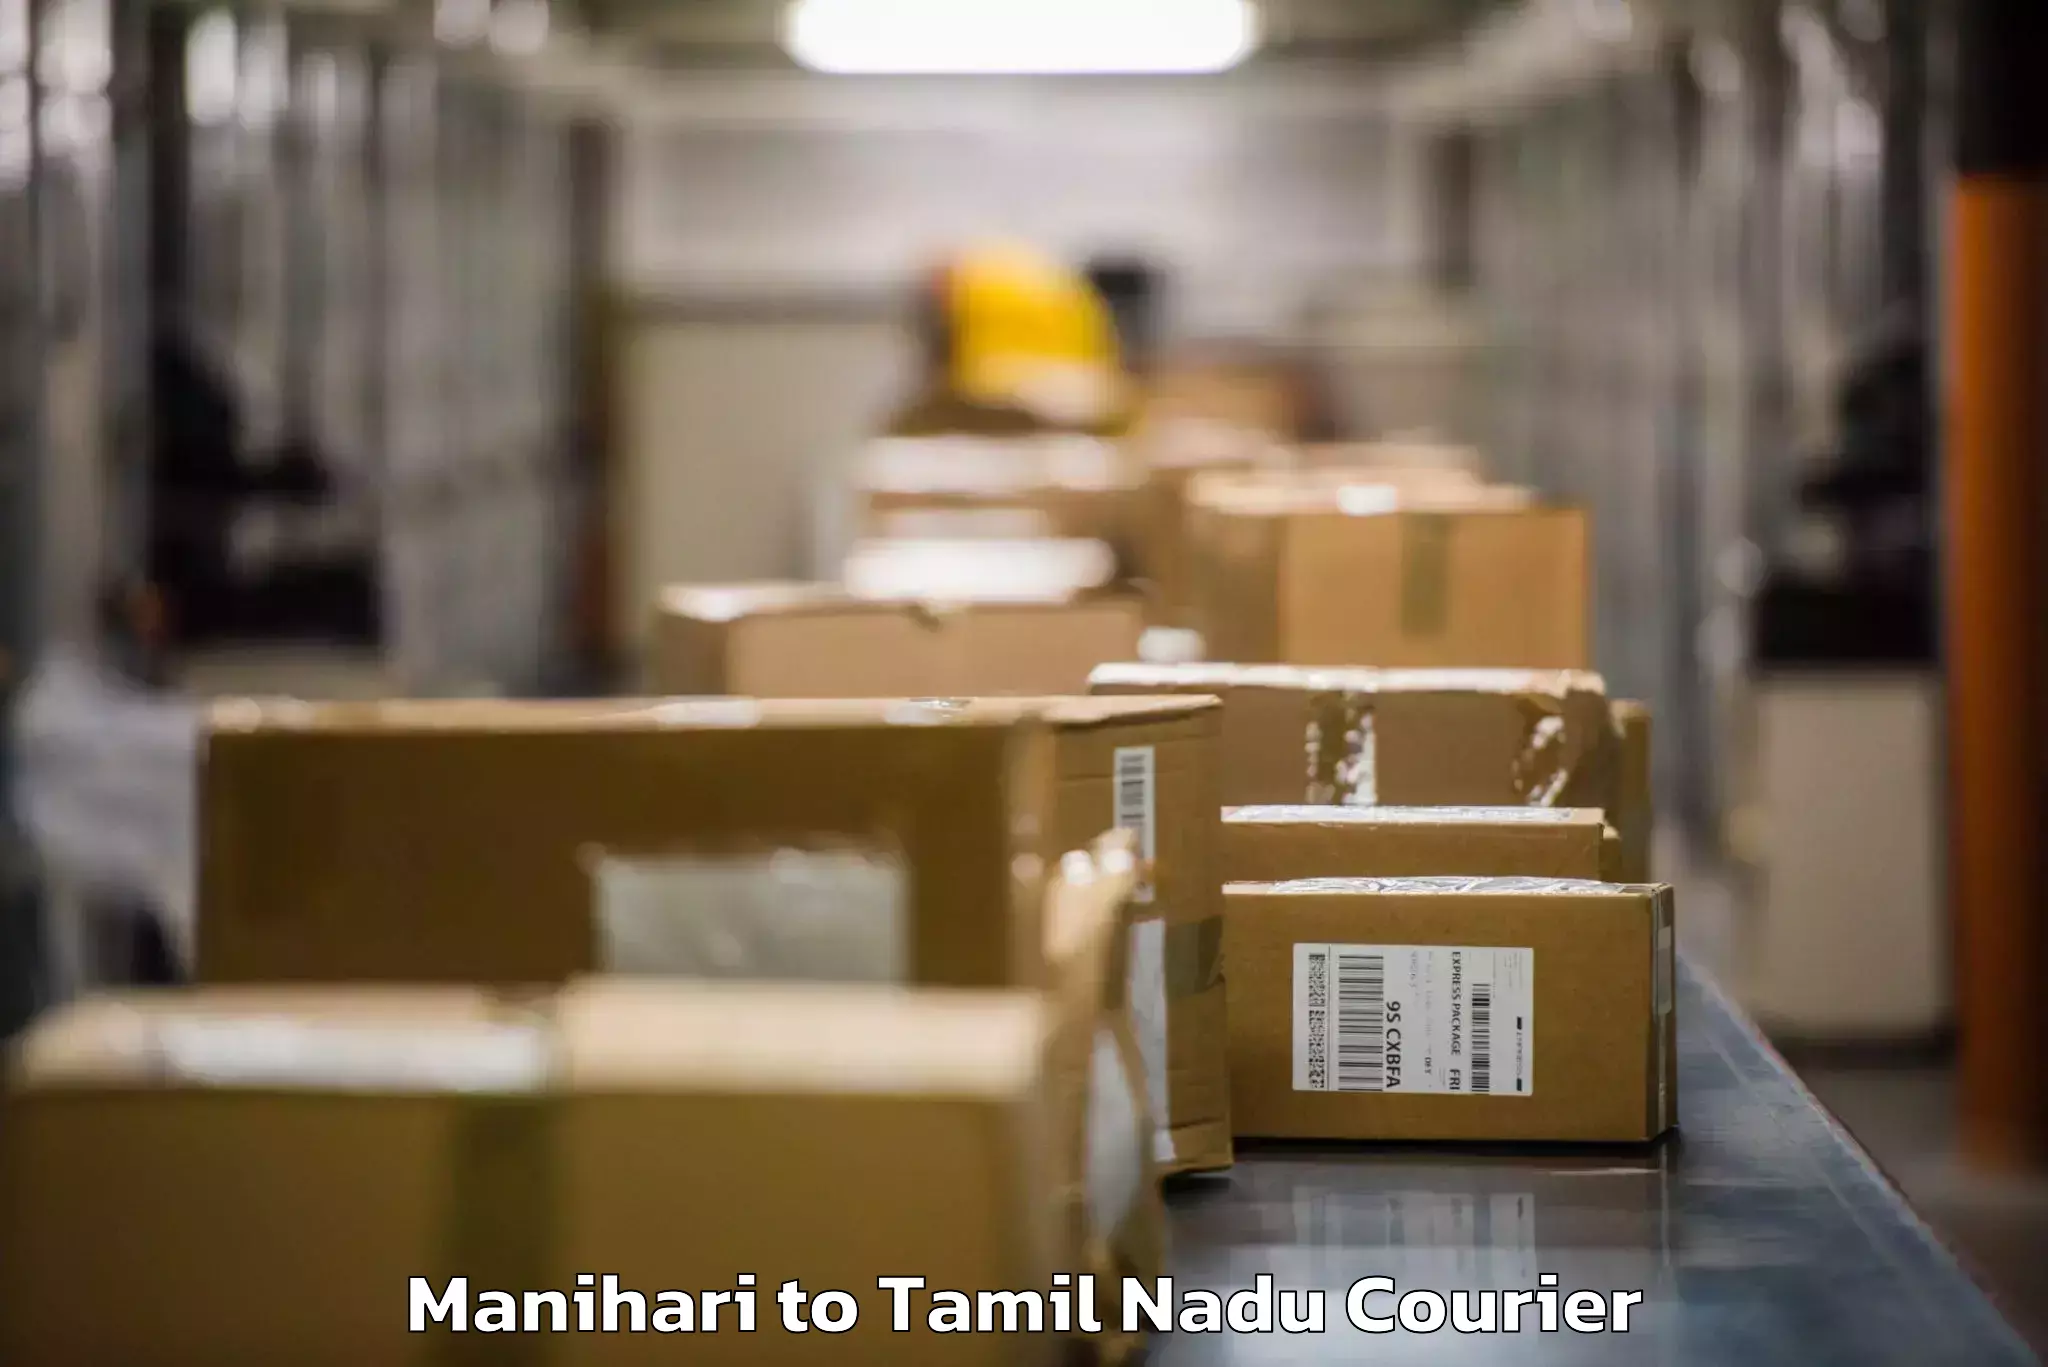 Baggage shipping experience in Manihari to Amrita Vishwa Vidyapeetham Coimbatore